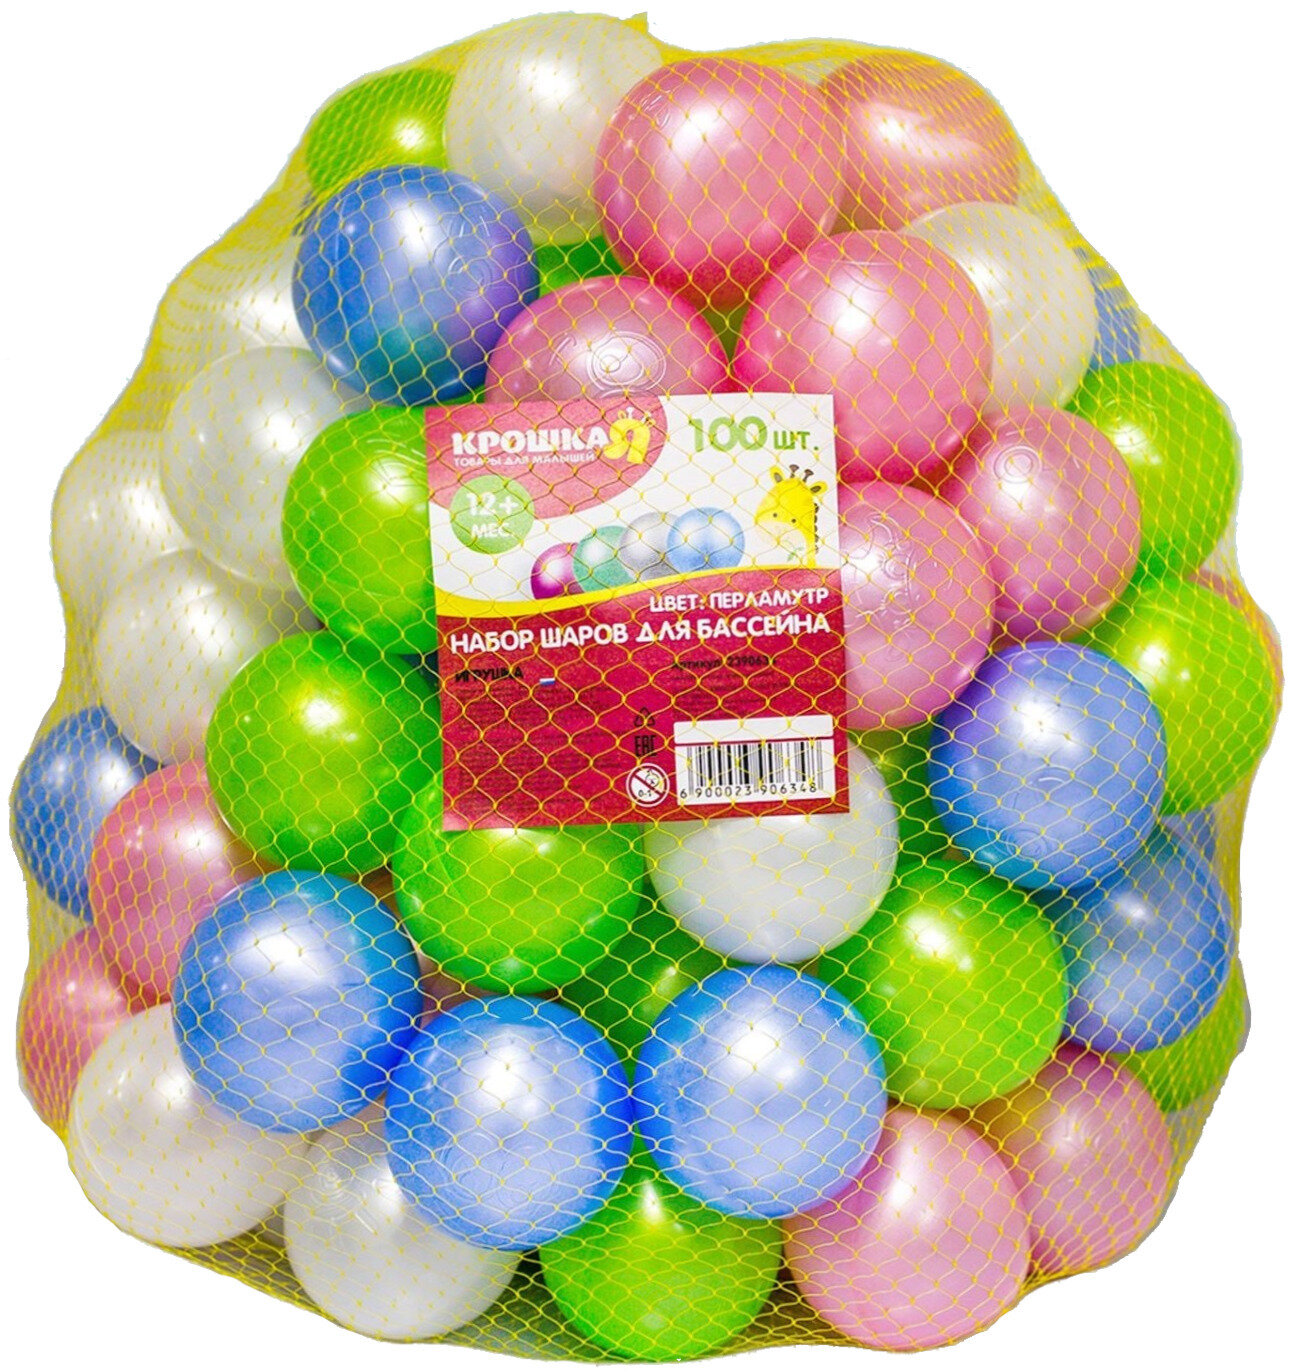 Шарики для сухого бассейна с рисунком "Перламутровые" диаметр шара 75 см набор 100 штук цвет: розовый голубой белый зелёный